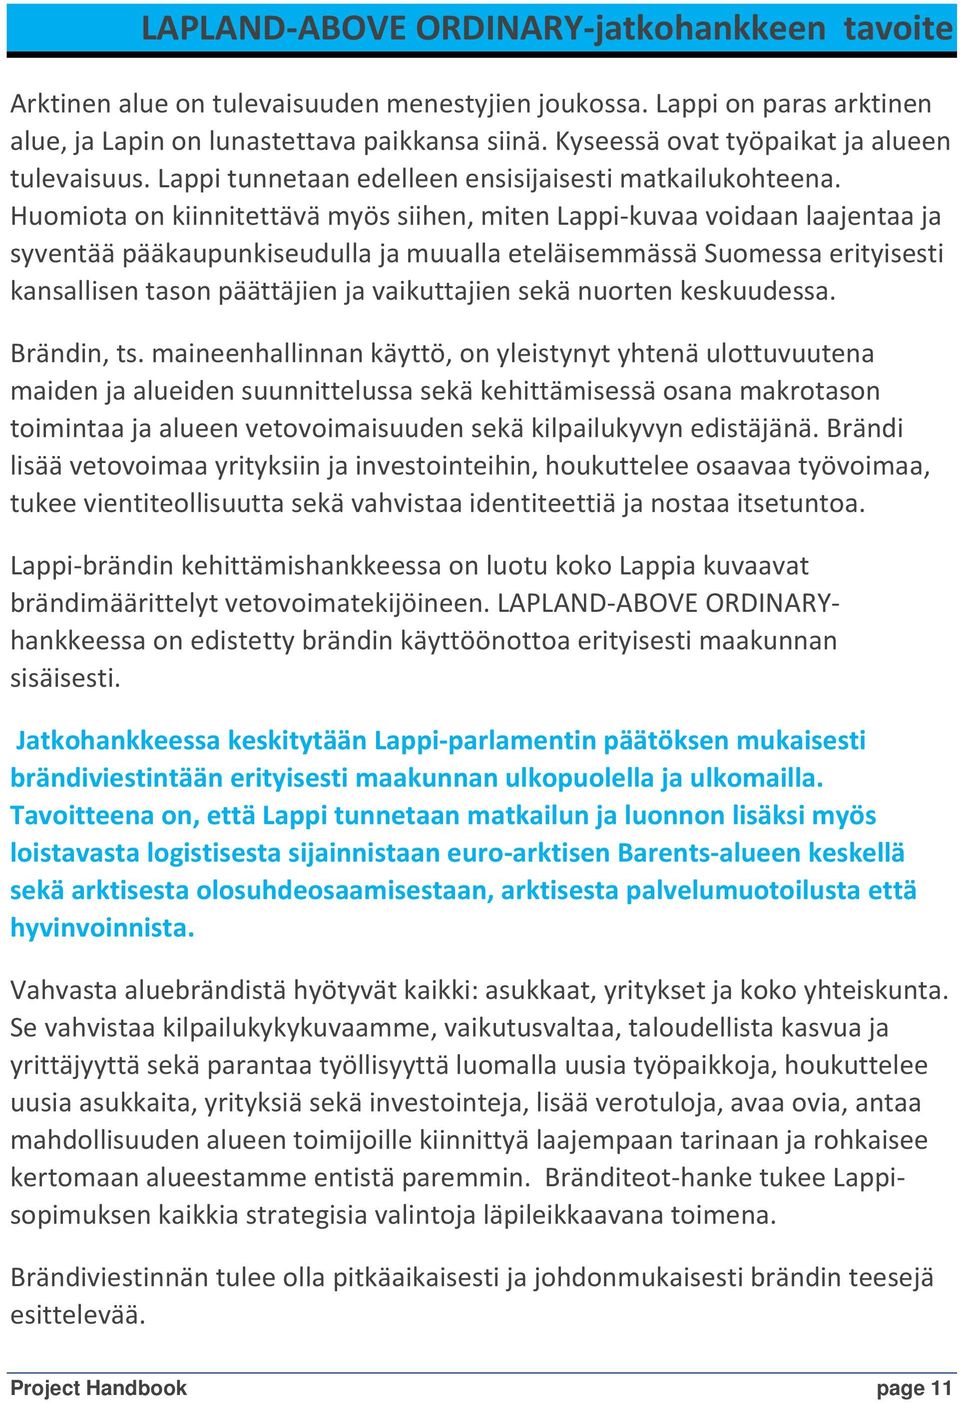 Huomiota on kiinnitettävä myös siihen, miten Lappi-kuvaa voidaan laajentaa ja syventää pääkaupunkiseudulla ja muualla eteläisemmässä Suomessa erityisesti kansallisen tason päättäjien ja vaikuttajien